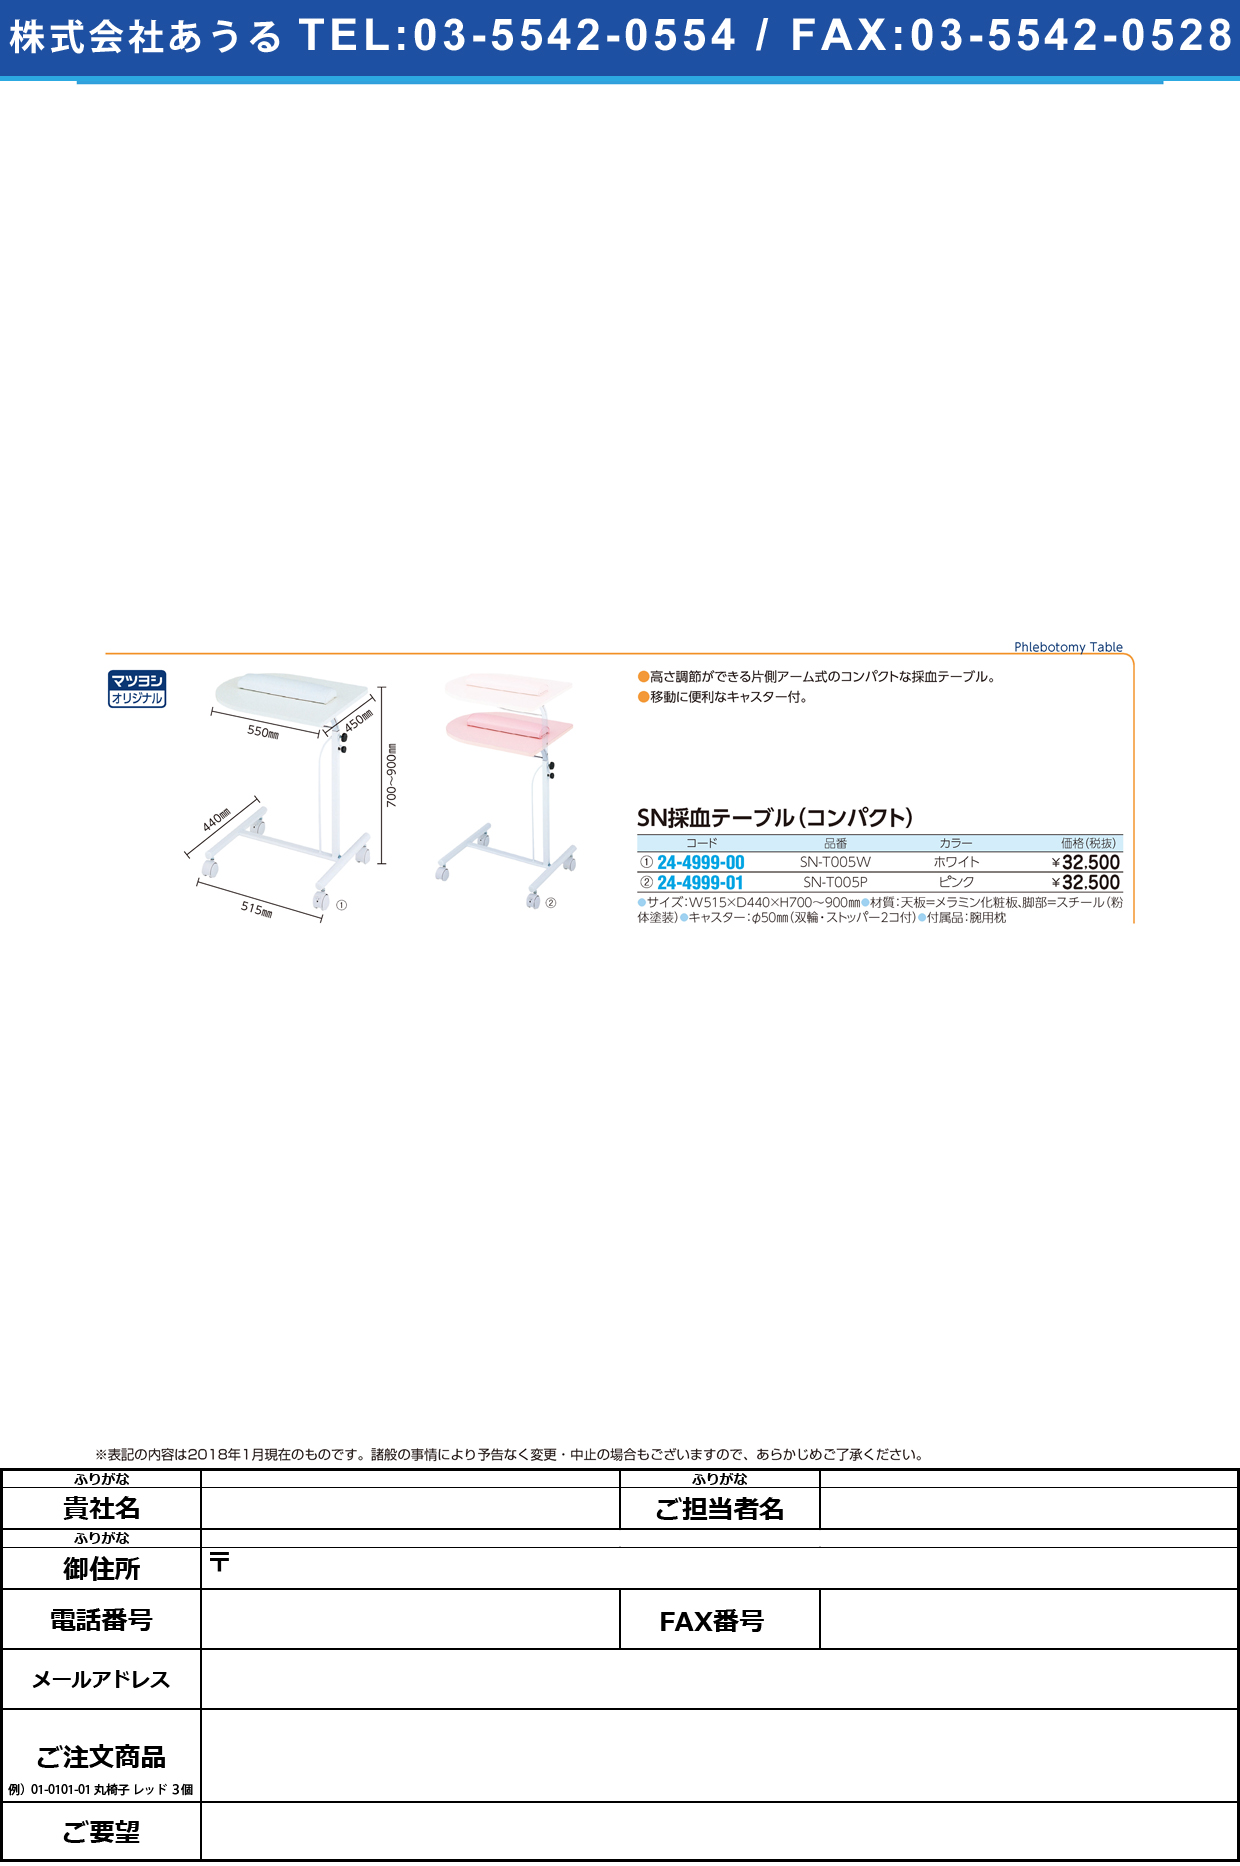 (24-4999-00)コンパクト採血テーブル SN-T005W(ﾎﾜｲﾄ) ｺﾝﾊﾟｸﾄｻｲｹﾂﾃｰﾌﾞﾙ【1台単位】【2019年カタログ商品】